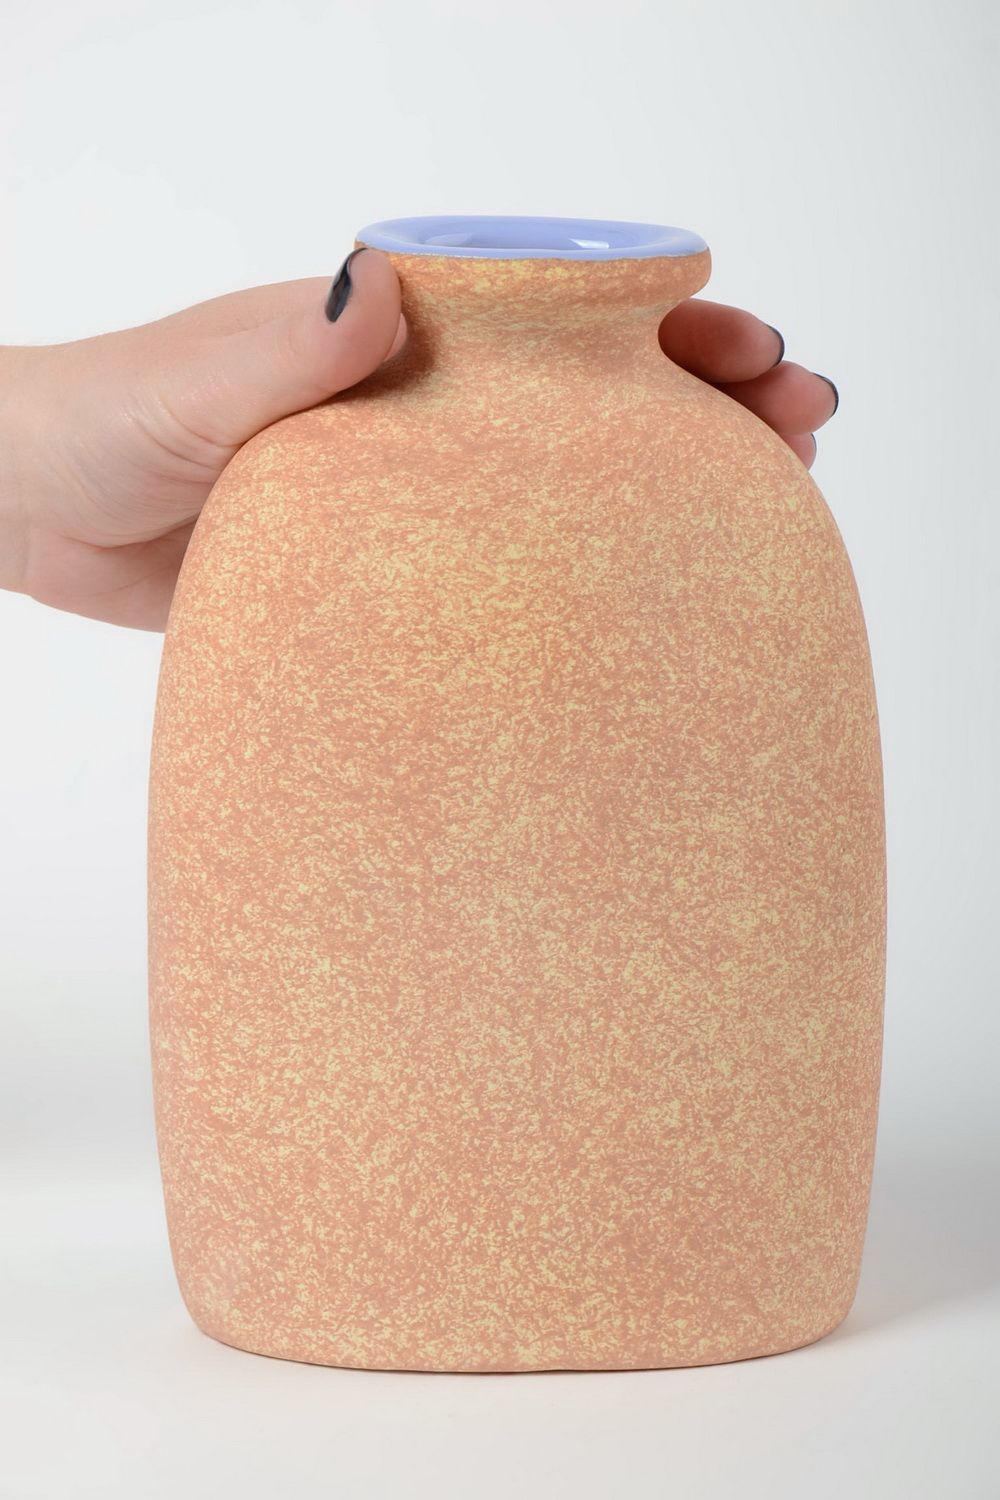 Künstler Vase handmade aus Halbporzellan mit Pigmenten bemalt 1 L für Blumen  foto 5